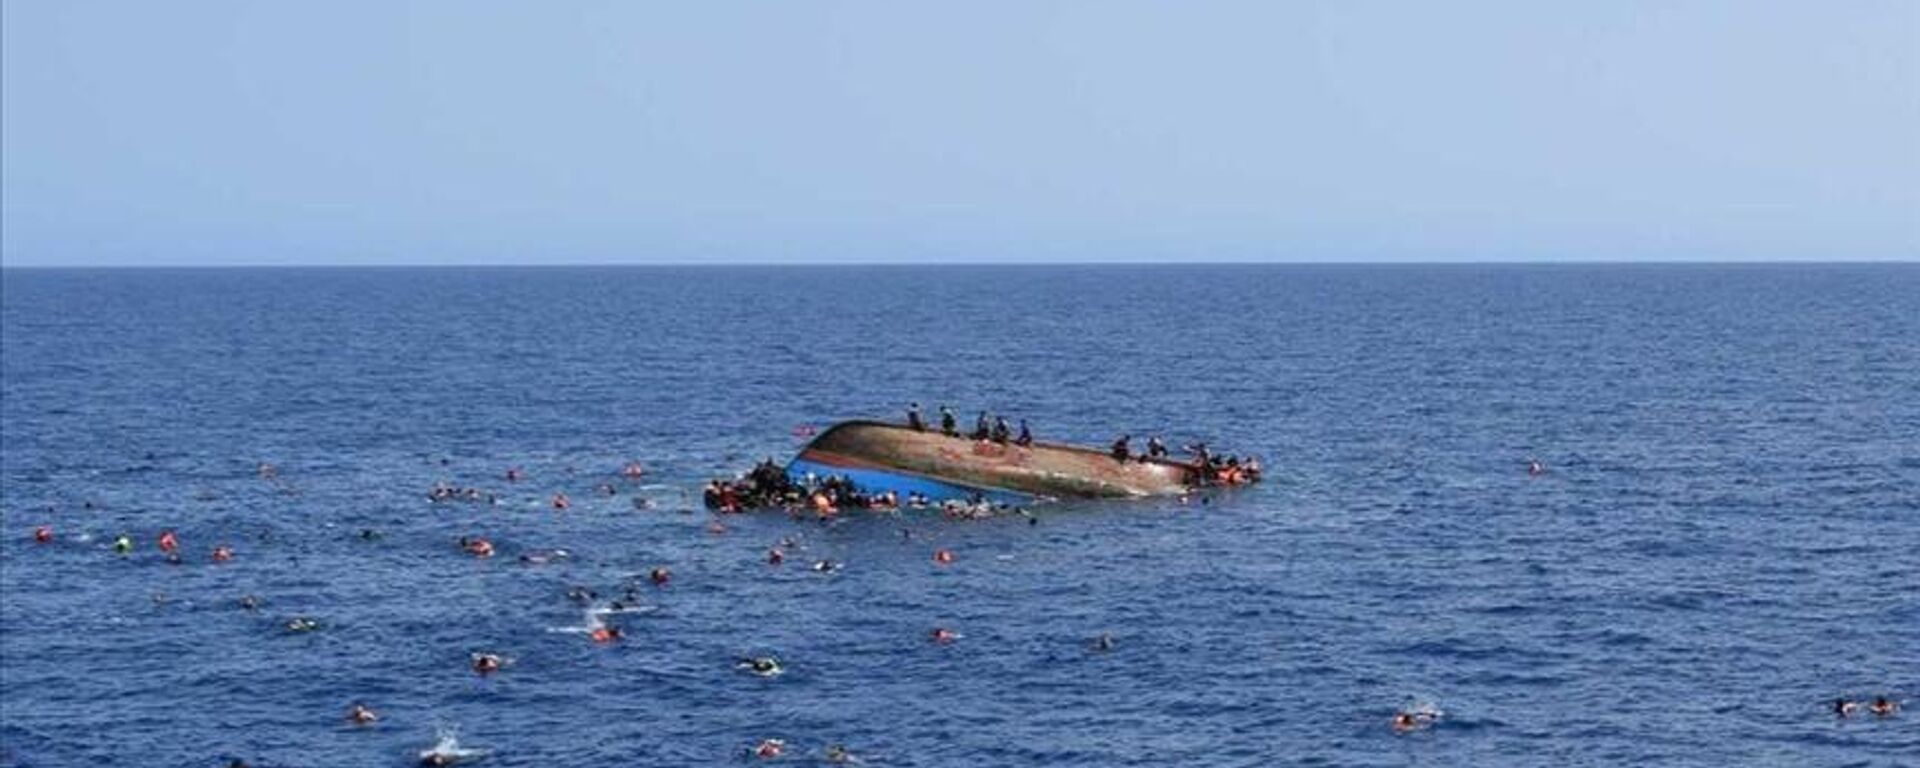 Bilirkişi raporunda, Fransız kurtarma gemisinin, Kasım 2021'de Manş Denizi'ndeki göçmen botunda 27 kişinin hayatını kaybettiği faciada yardım çağrılarına yanıt vermediği belirlendi. - Sputnik Türkiye, 1920, 26.02.2023